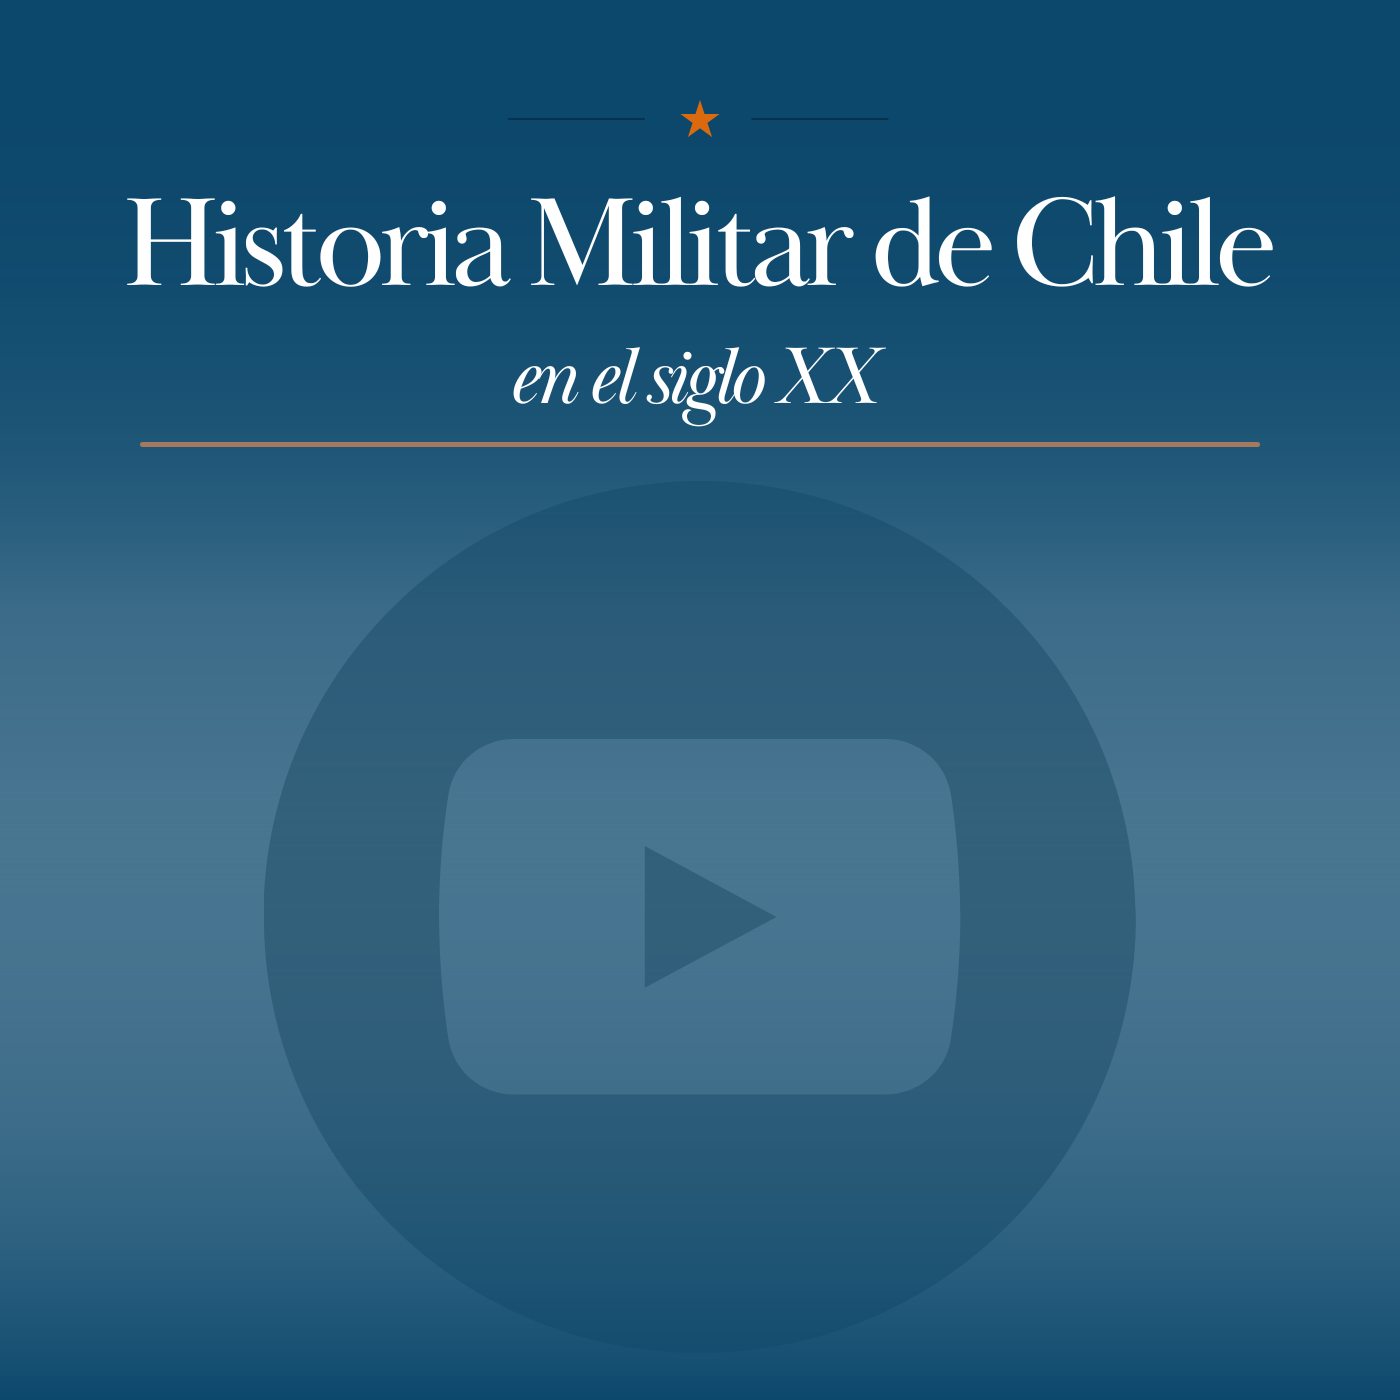 Historia Militar de Chile Youtube